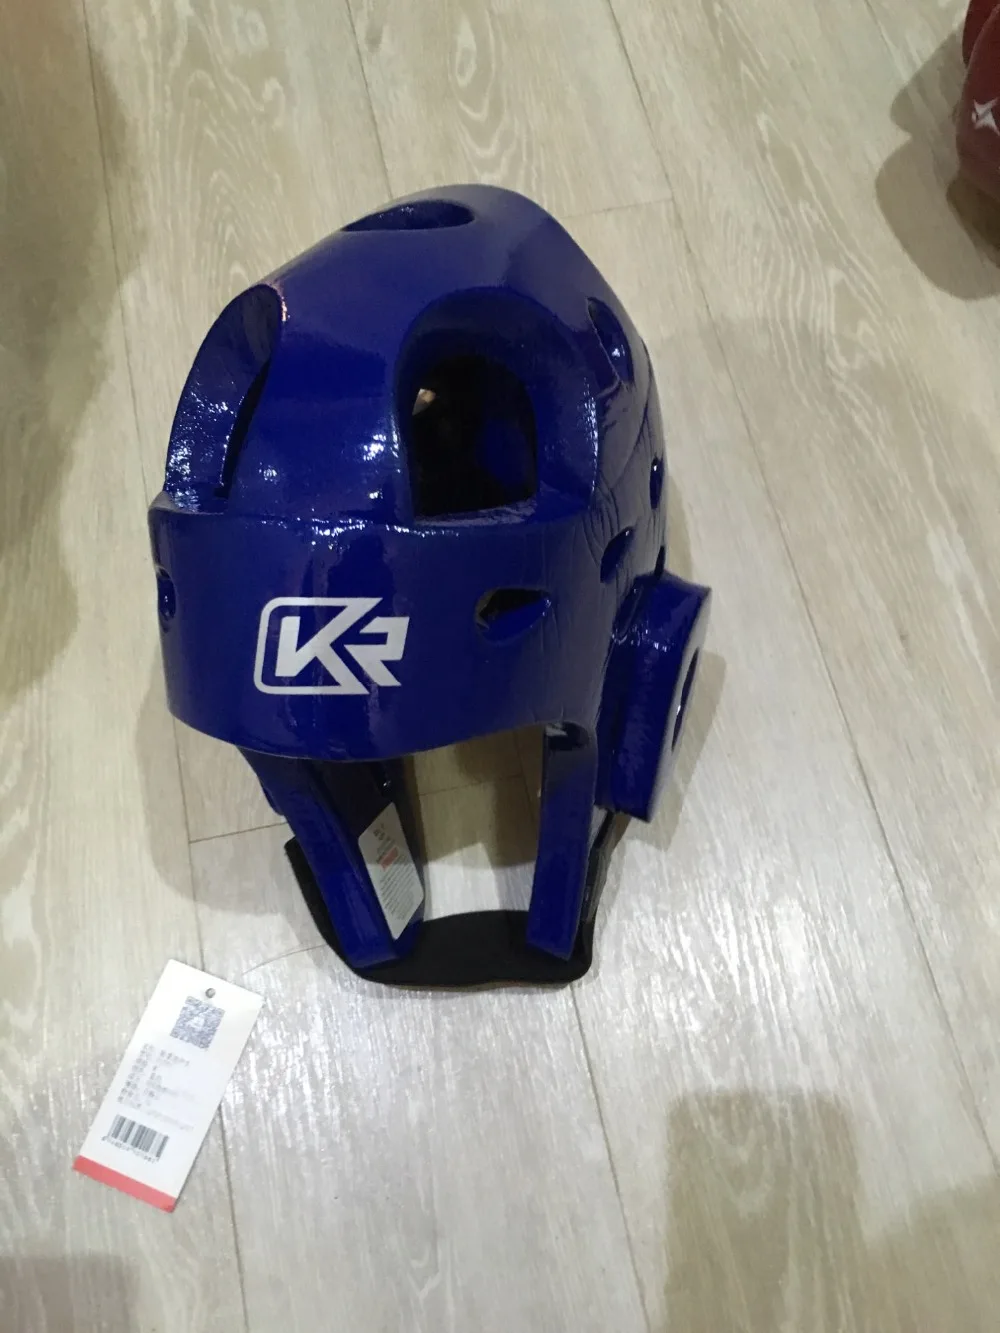 Санда Каратэ Муай Тай боксерский шлем тхэквондо шлем тренировочный шлем Защита головы для взрослых мужчин женщин синий красный